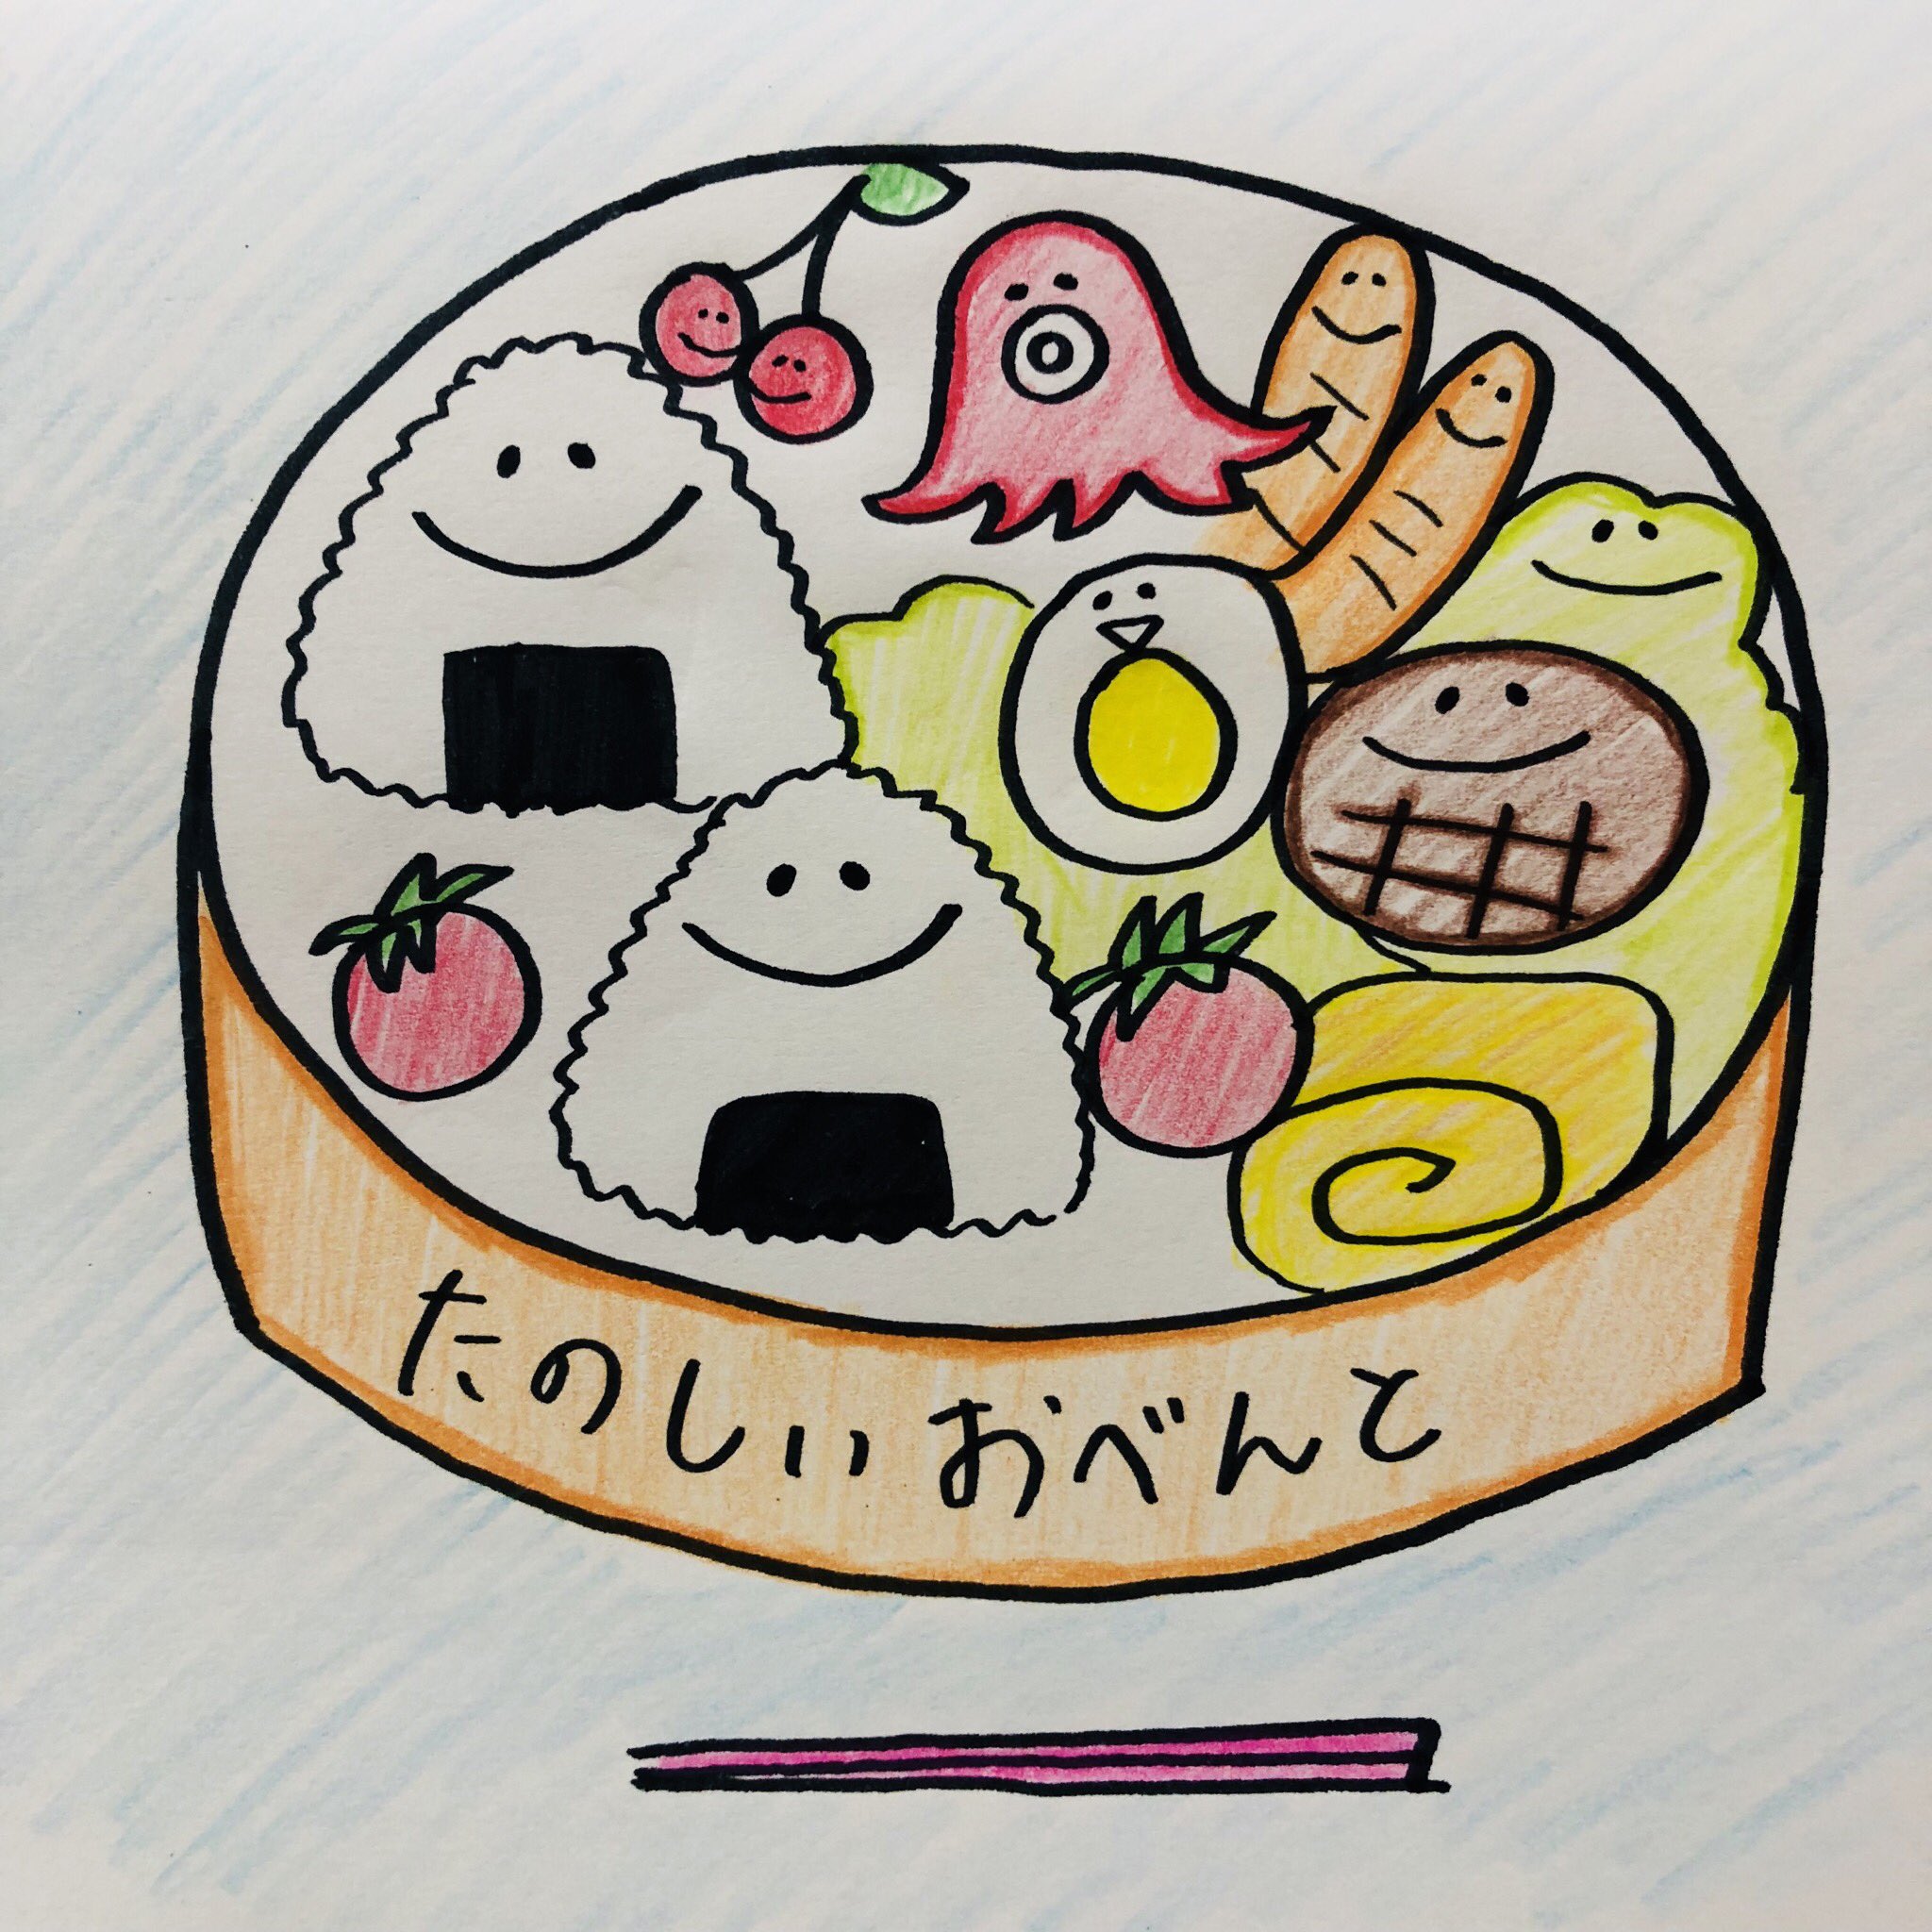 ちゃんりーu Twitter પર お弁当の仲間たち イラスト 簡単 癒し お弁当 おかず 可愛い おにぎり カラフル 楽しい Illustration Cute Lunch Box Lunch T Co 41trnqwfwn Twitter